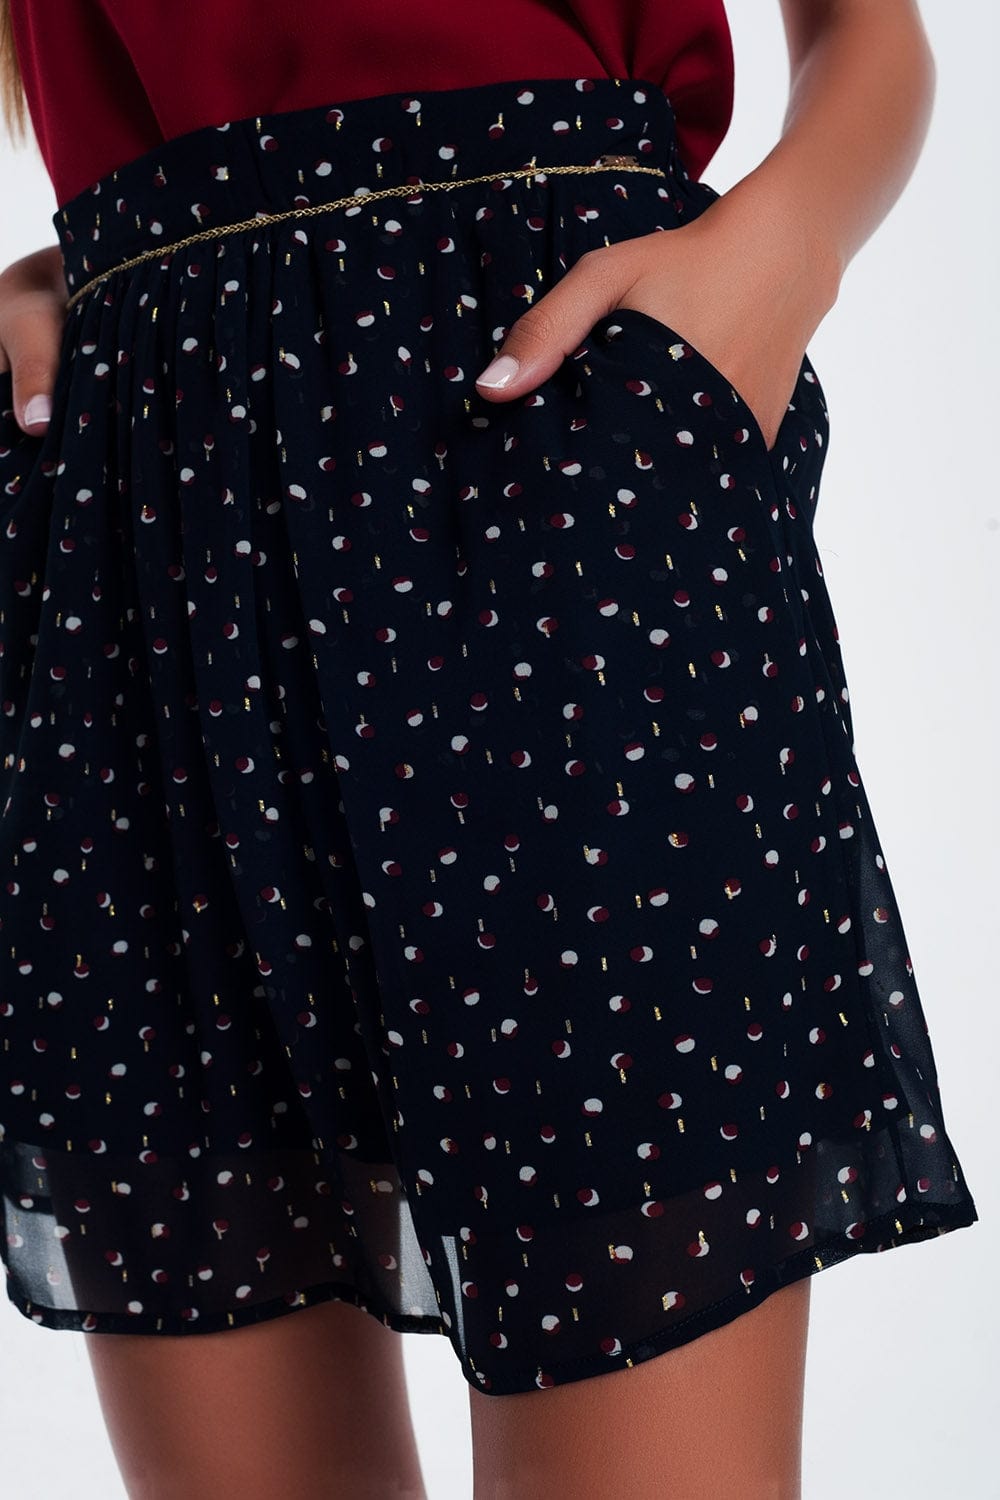 Q2 Women's Skirt Mini Skirt Navy in Scribble Polka Dot